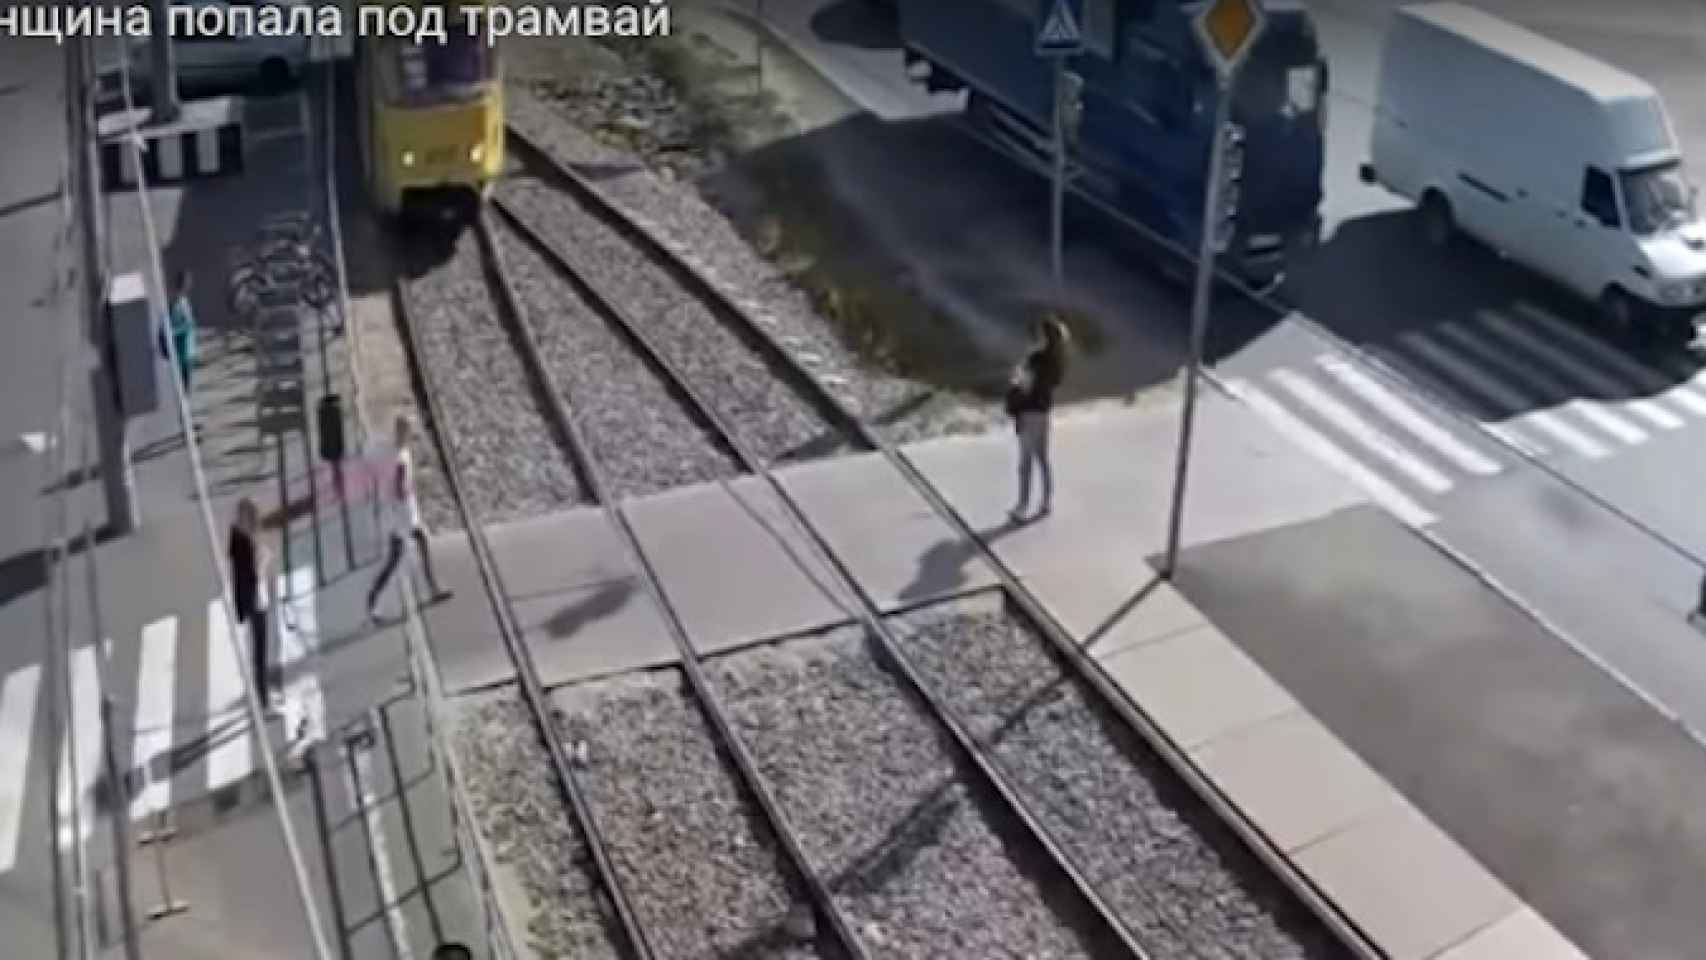 La mujer instantes antes de ser atropellada por el tranvía